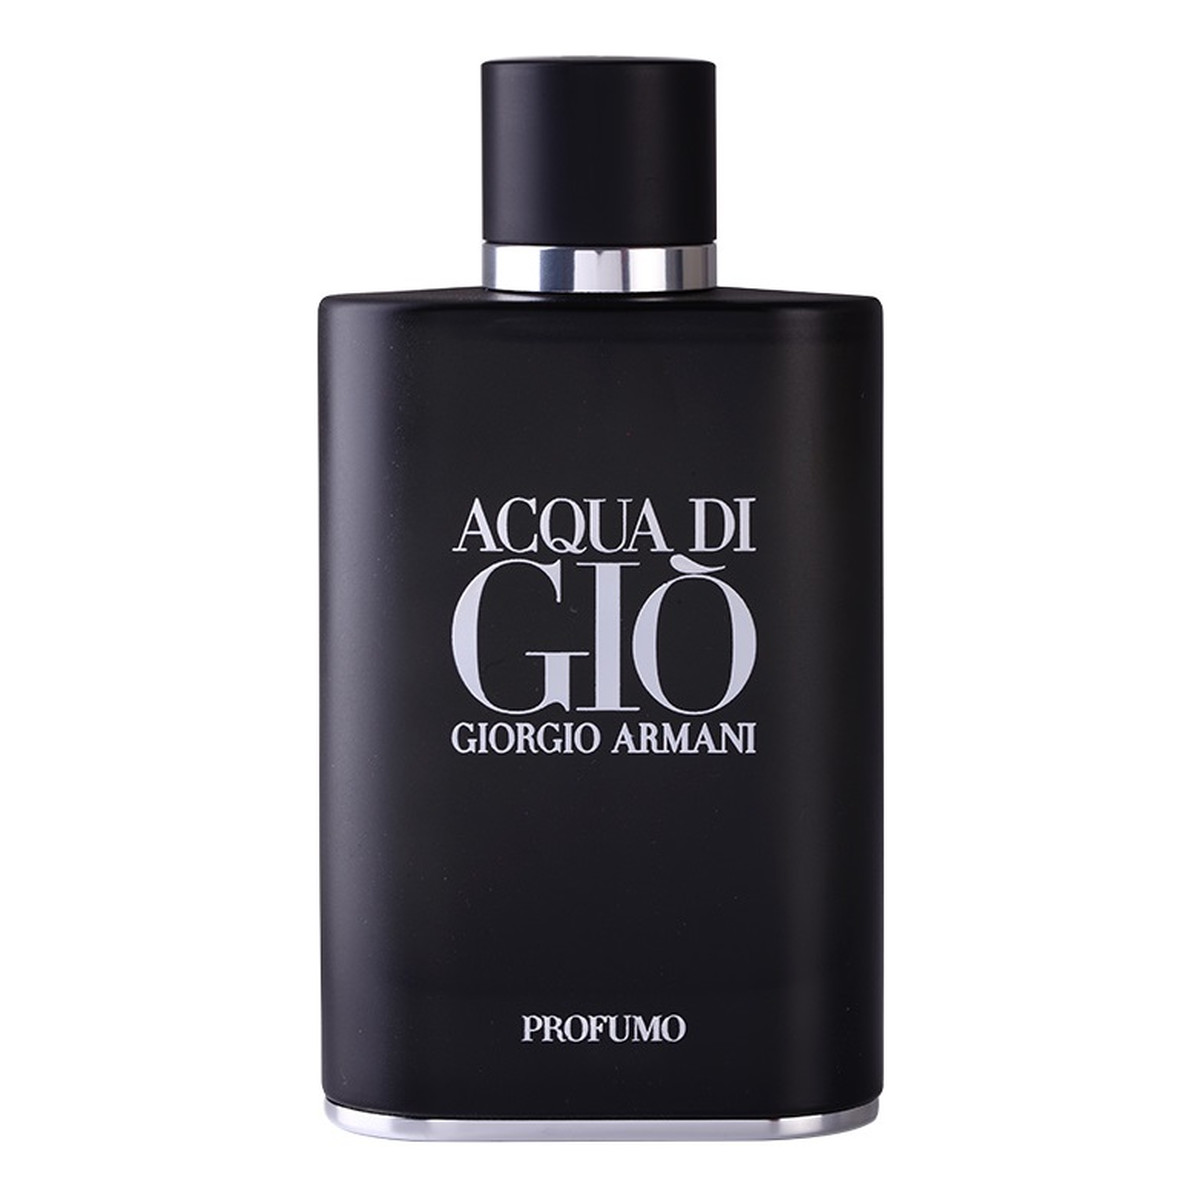 Giorgio Armani Acqua di Gio Profumo Woda perfumowana spray 125ml